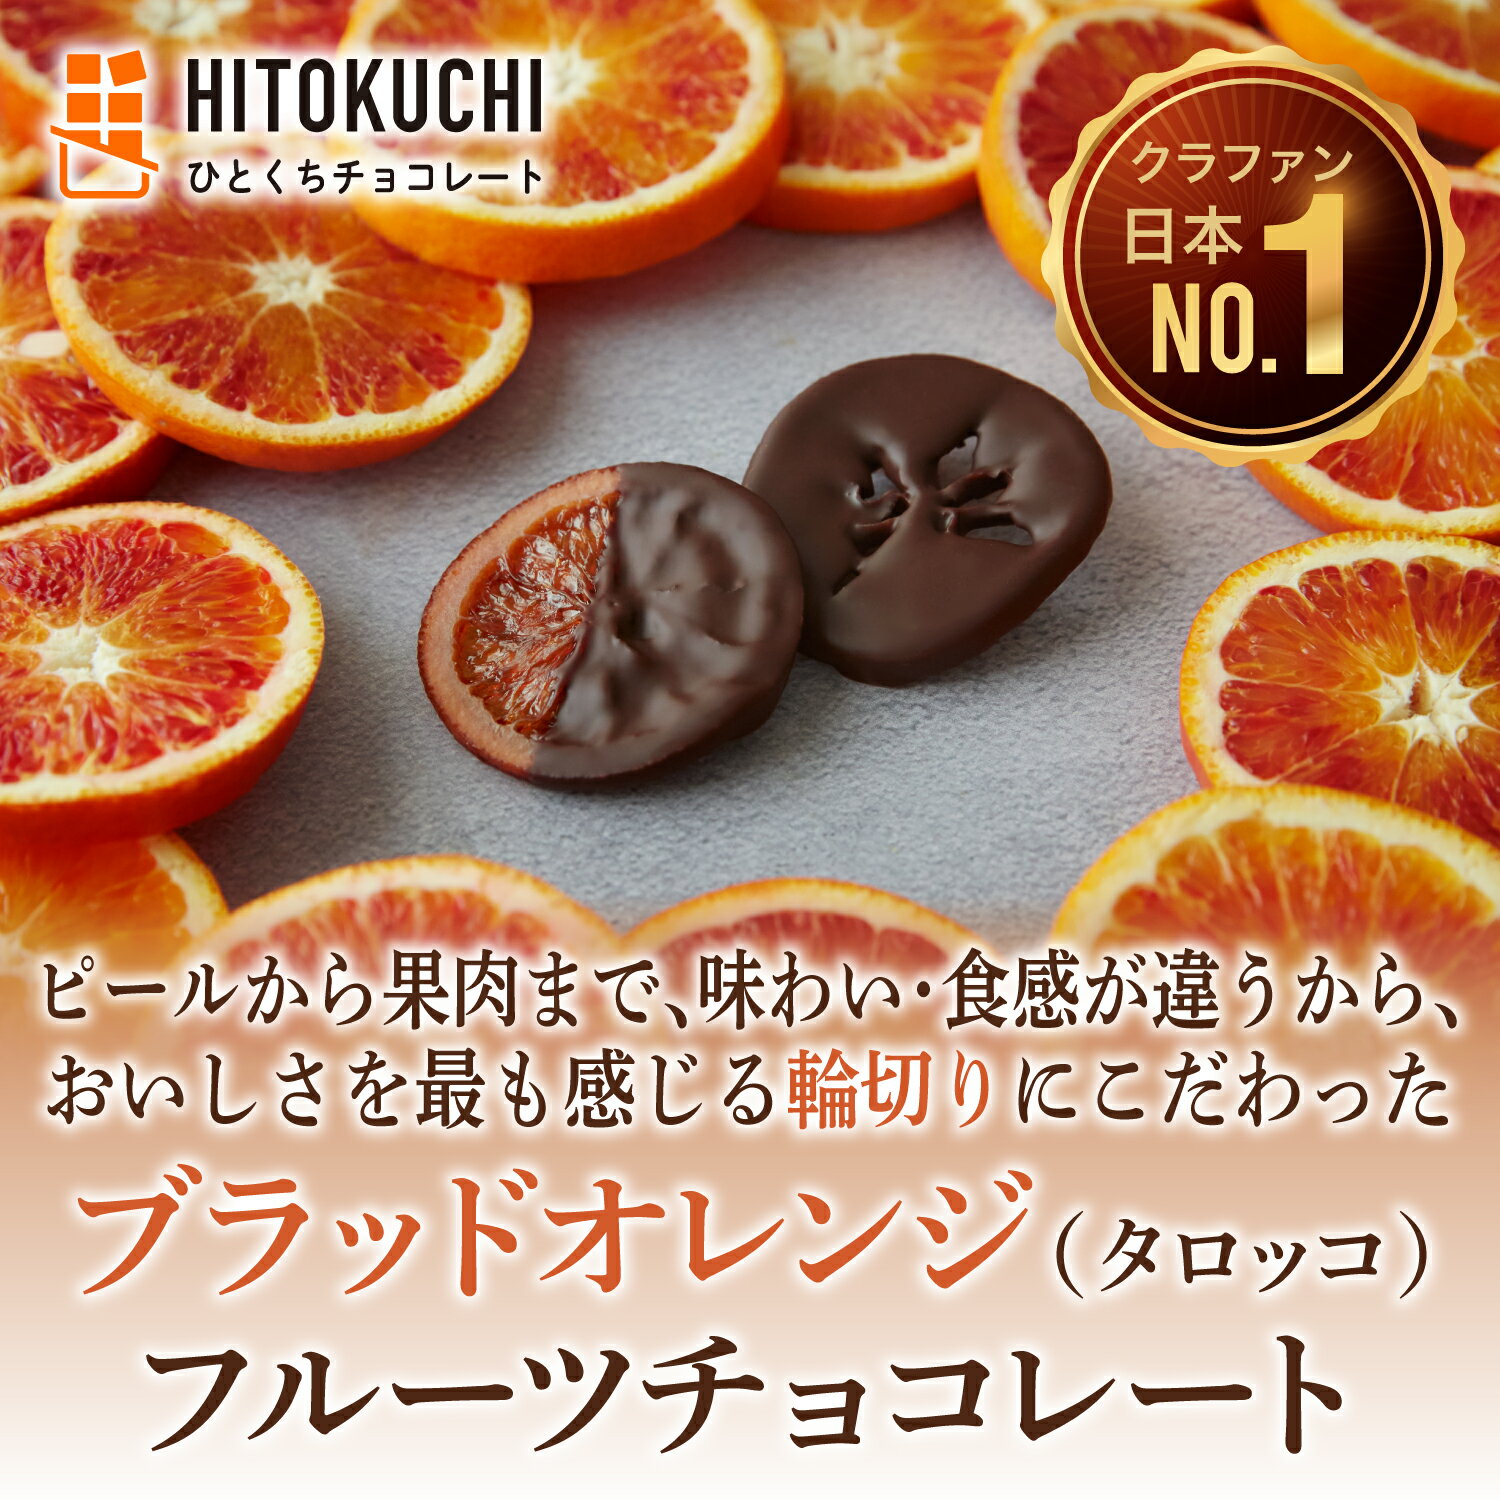 楽天【安心の日本企業】MAKERS TOKYO【送料無料・即お届け】ひとくちブラッドオレンジ